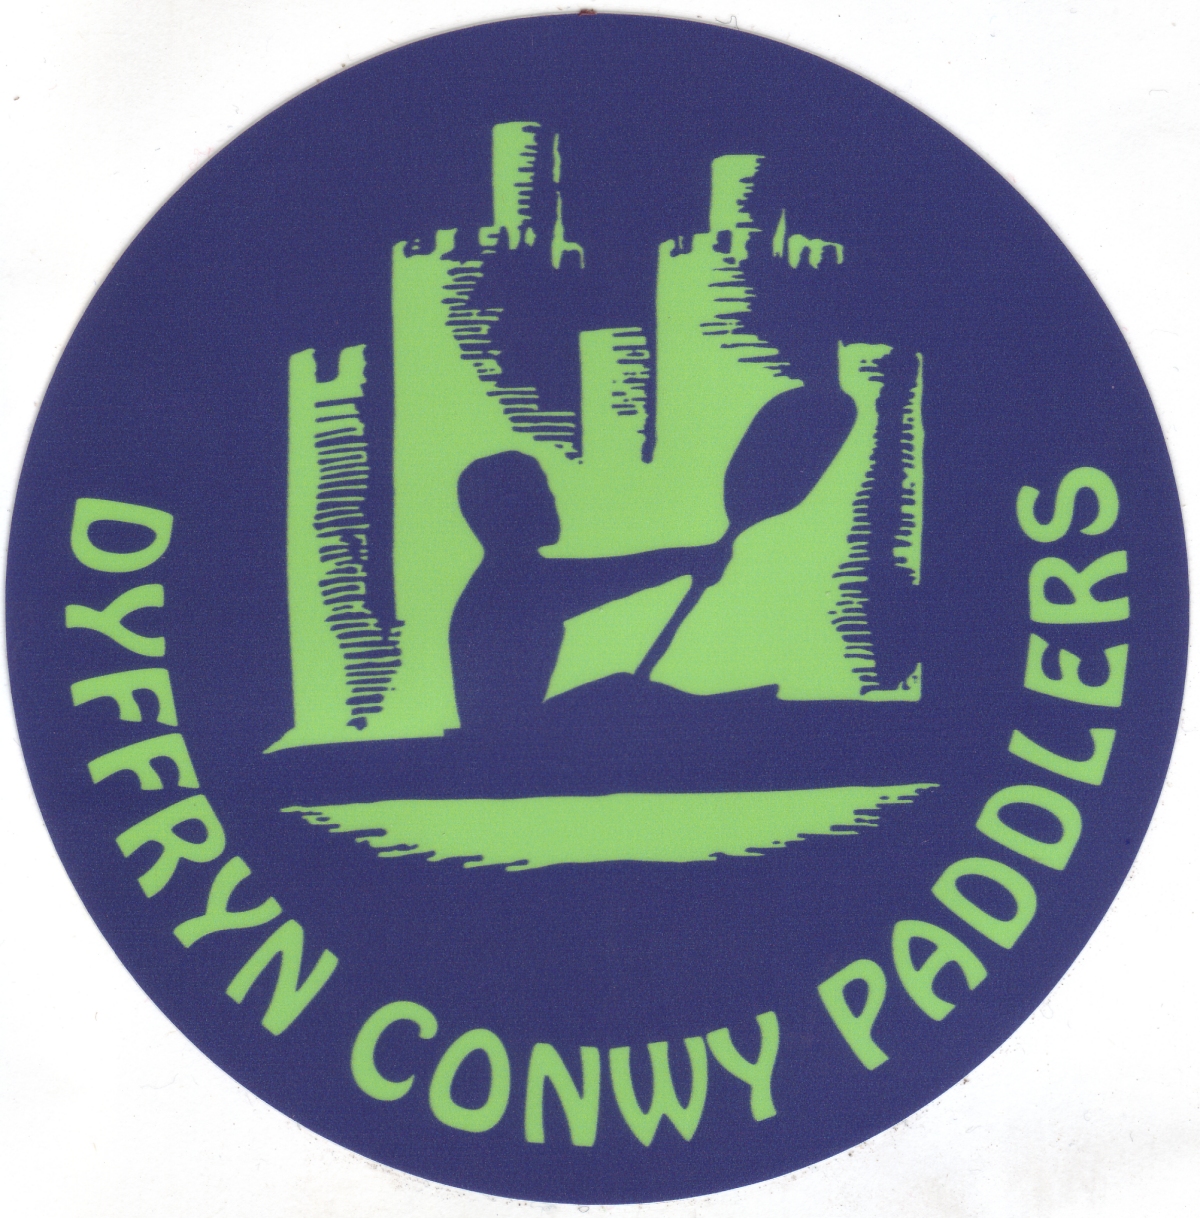 Dyffryn Conwy Paddlers